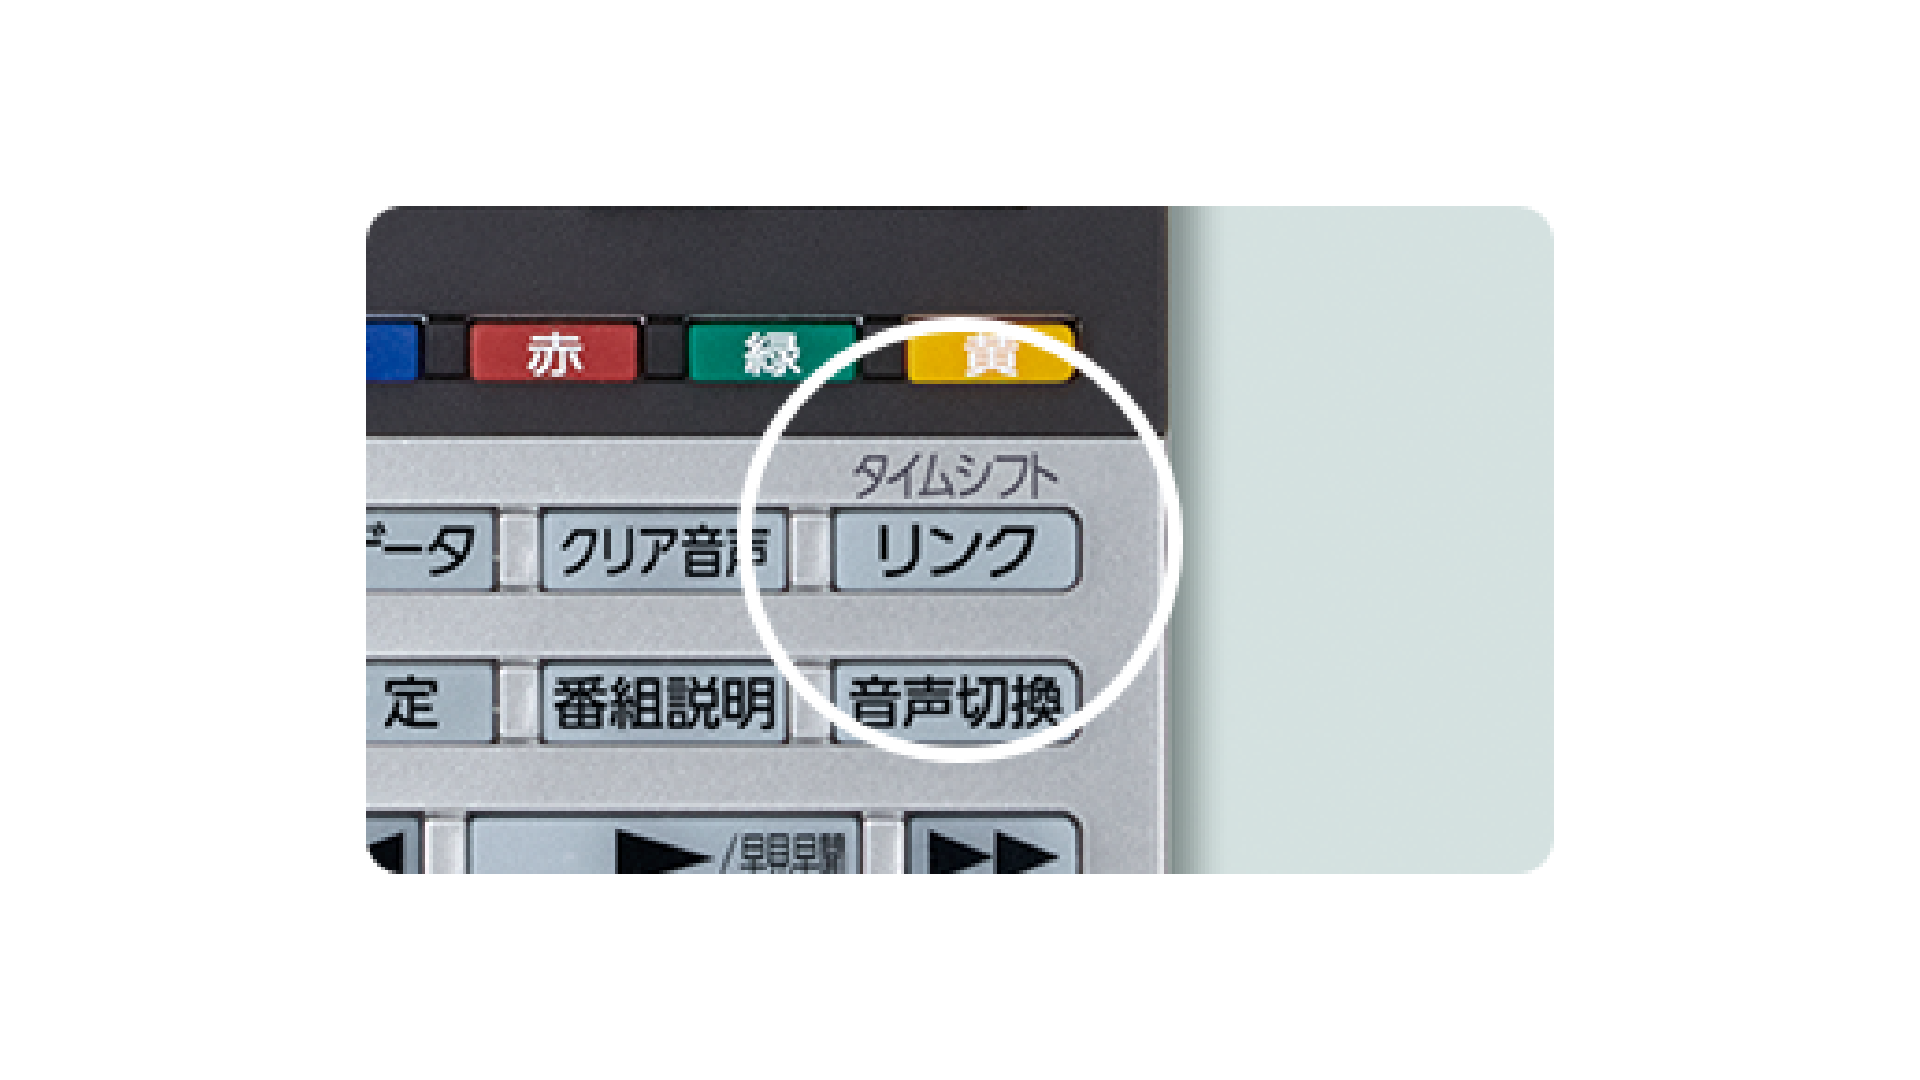 テレビ/映像機器 テレビ D-M210 タイムシフトマシン｜REGZA<レグザ>TOSHIBA(東芝)